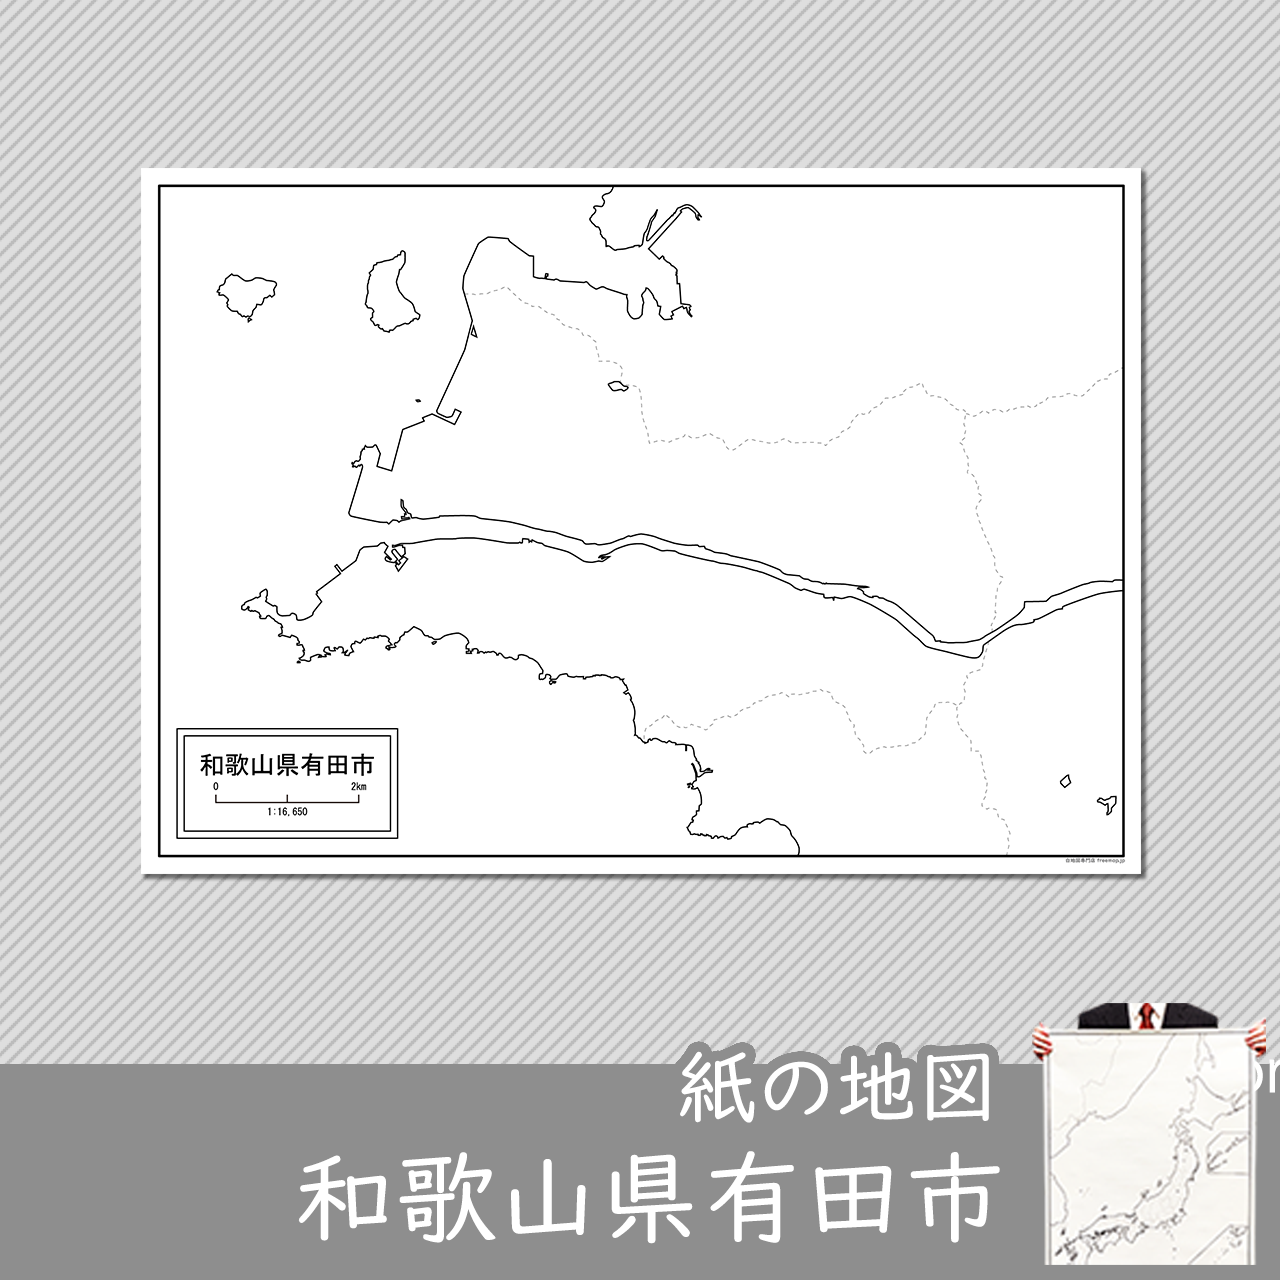 有田市の紙の白地図のサムネイル